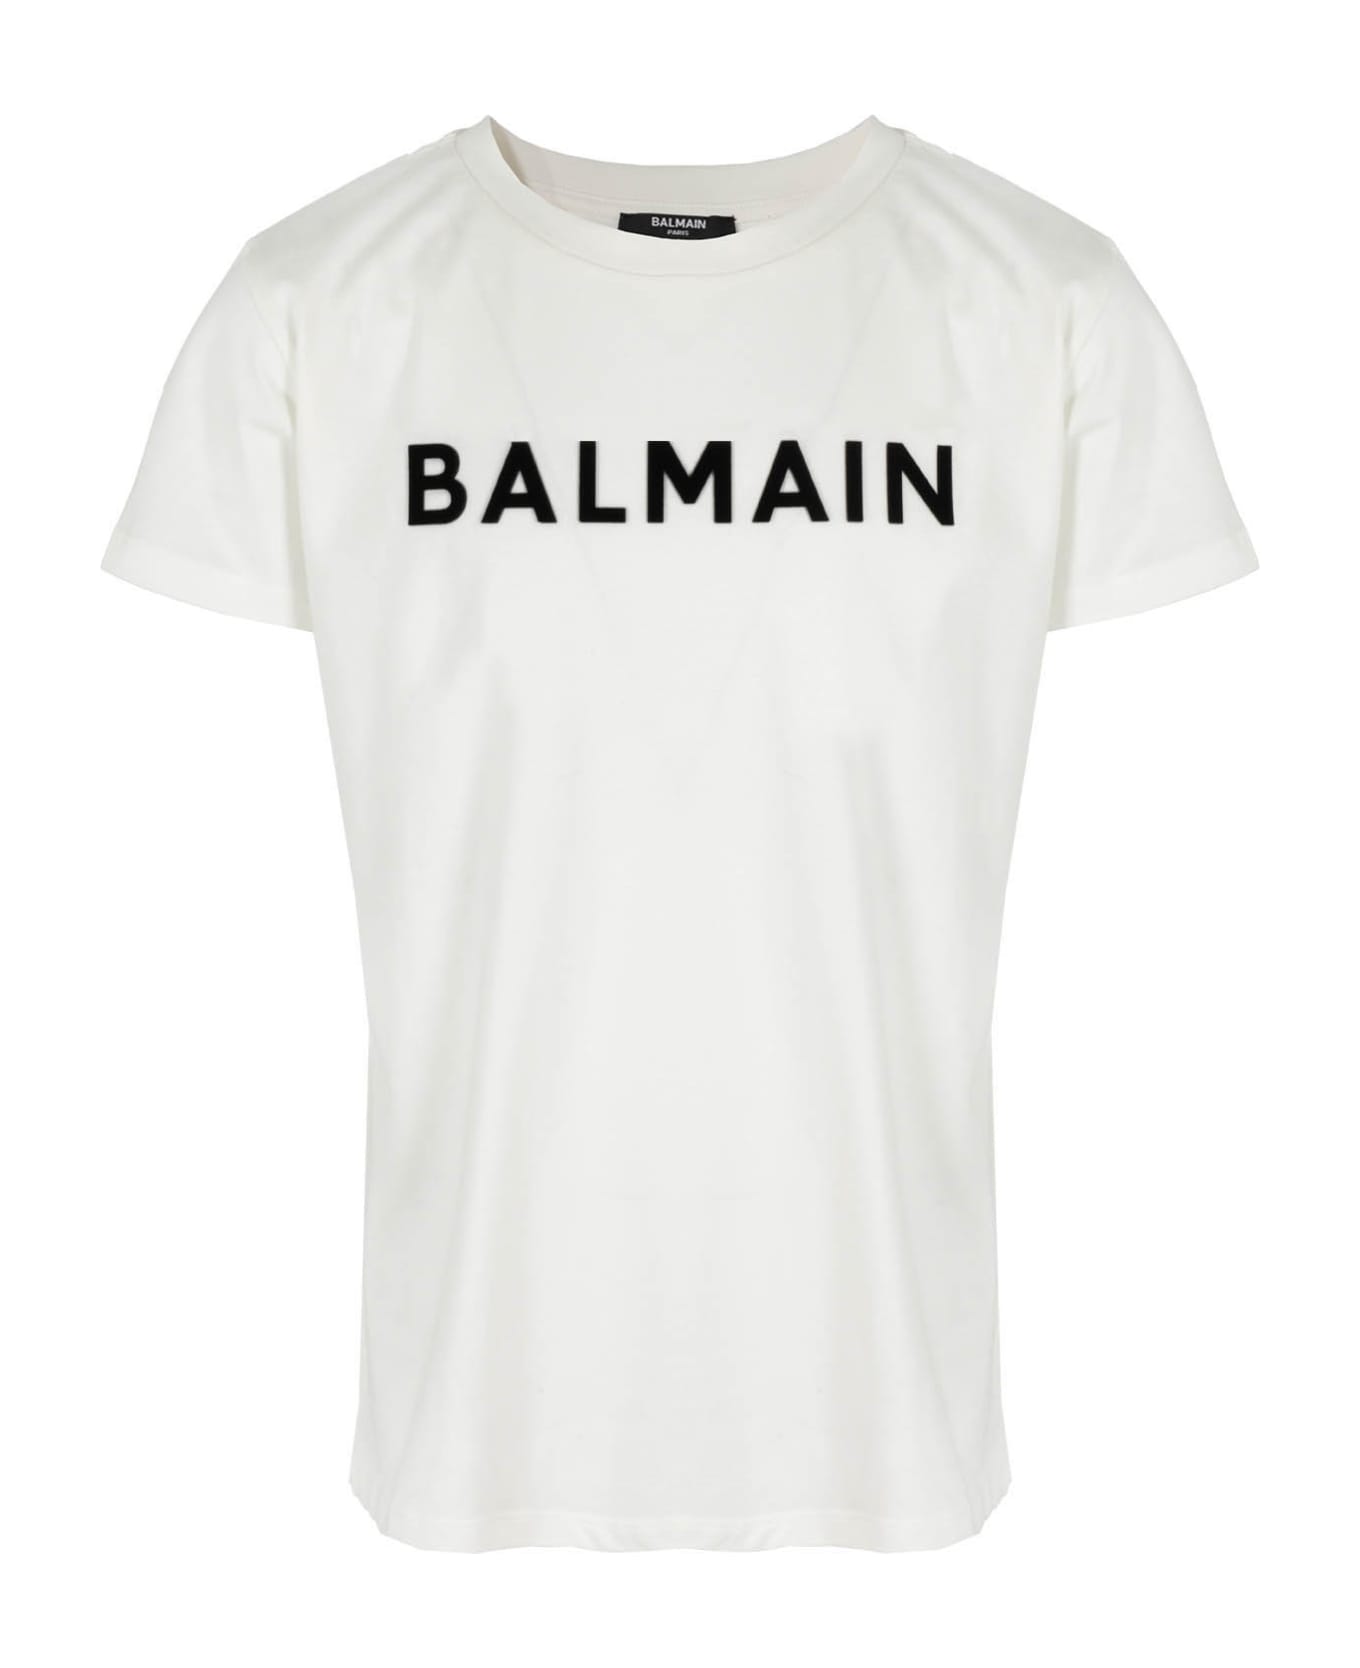 Balmain Tshirt - Ne Ivory Black